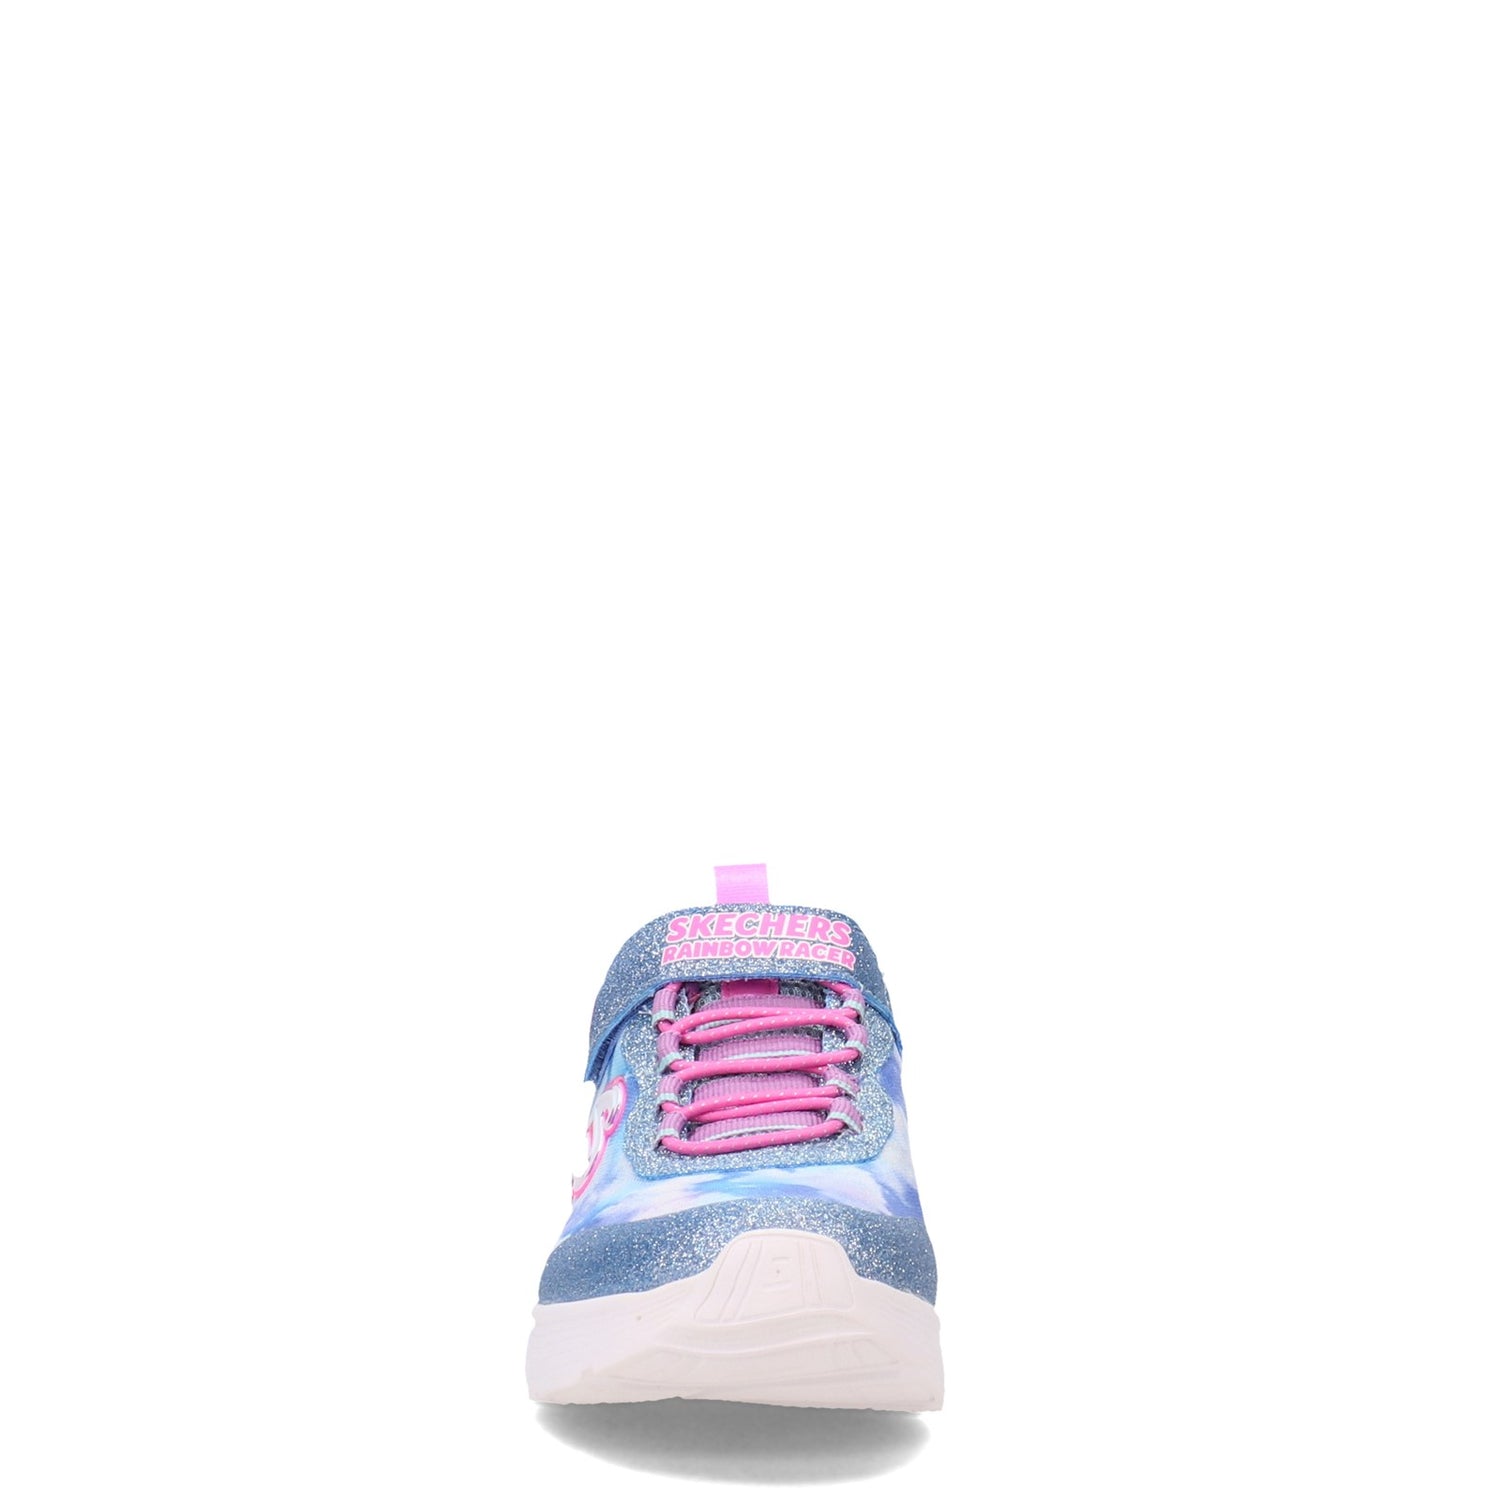 Peltz Shoes  Girl's Skechers S Lights: Rainbow Racers - Little Kid BLUE 302300L-BLU